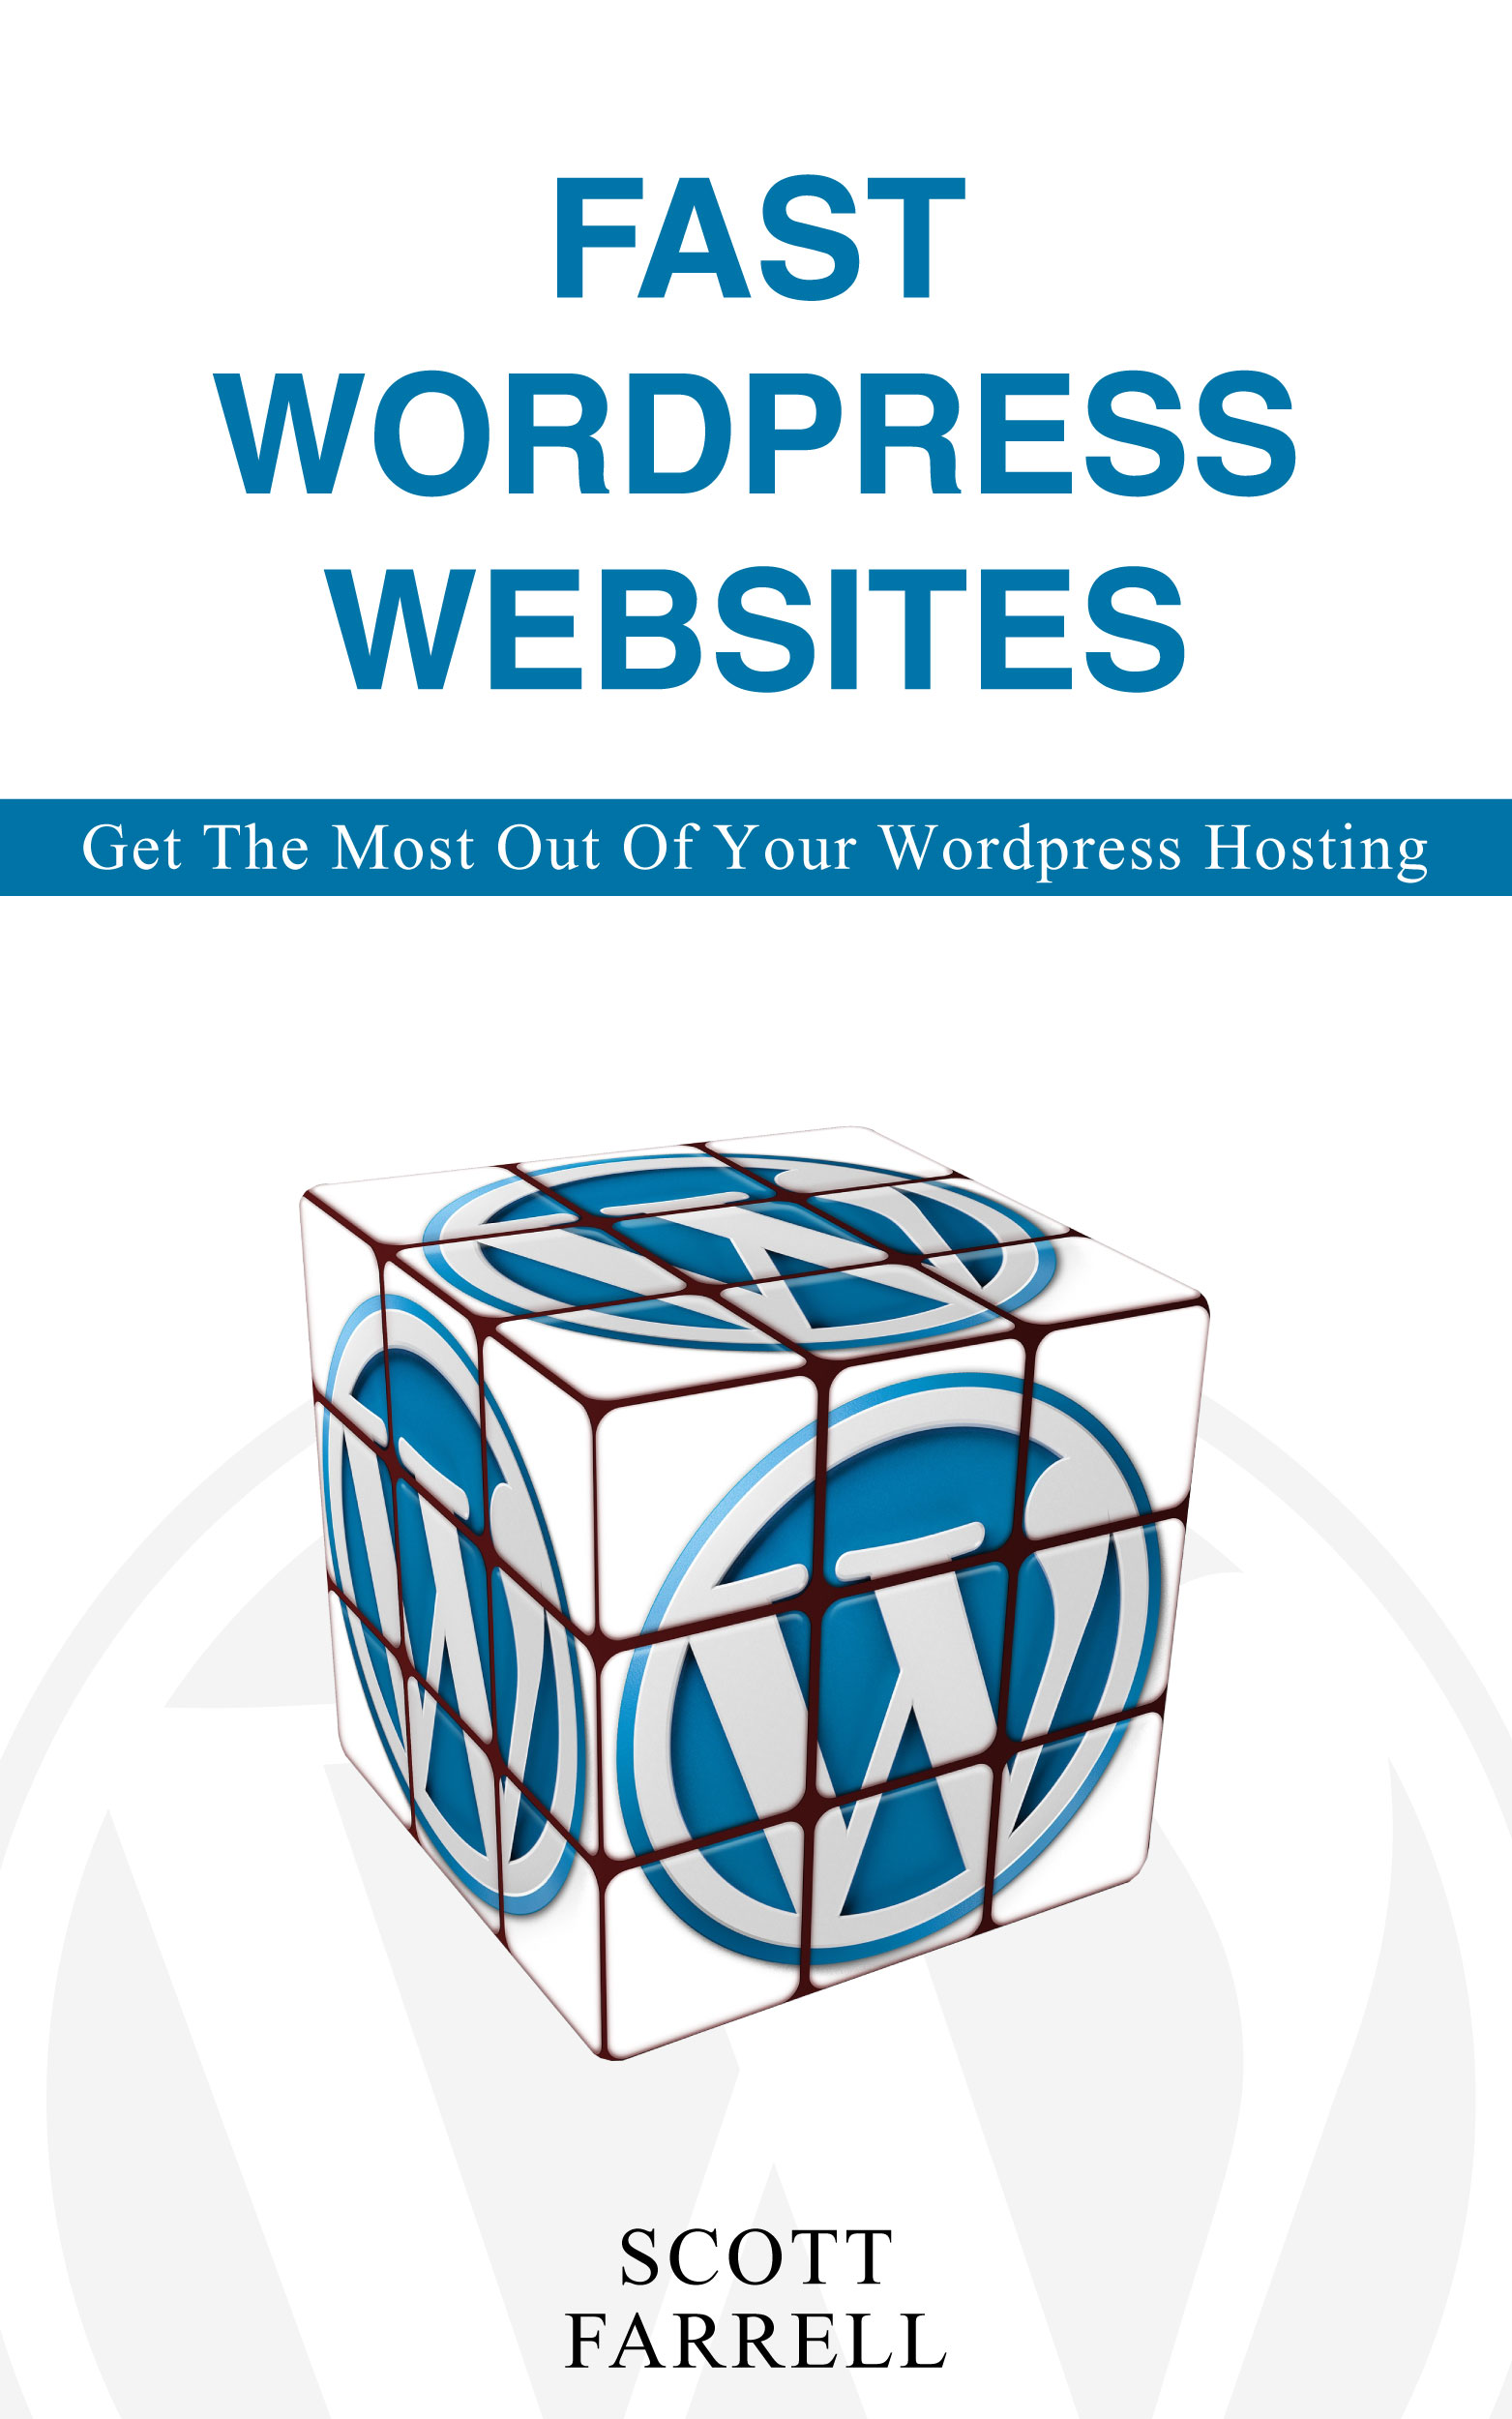 Fast WordPress websites